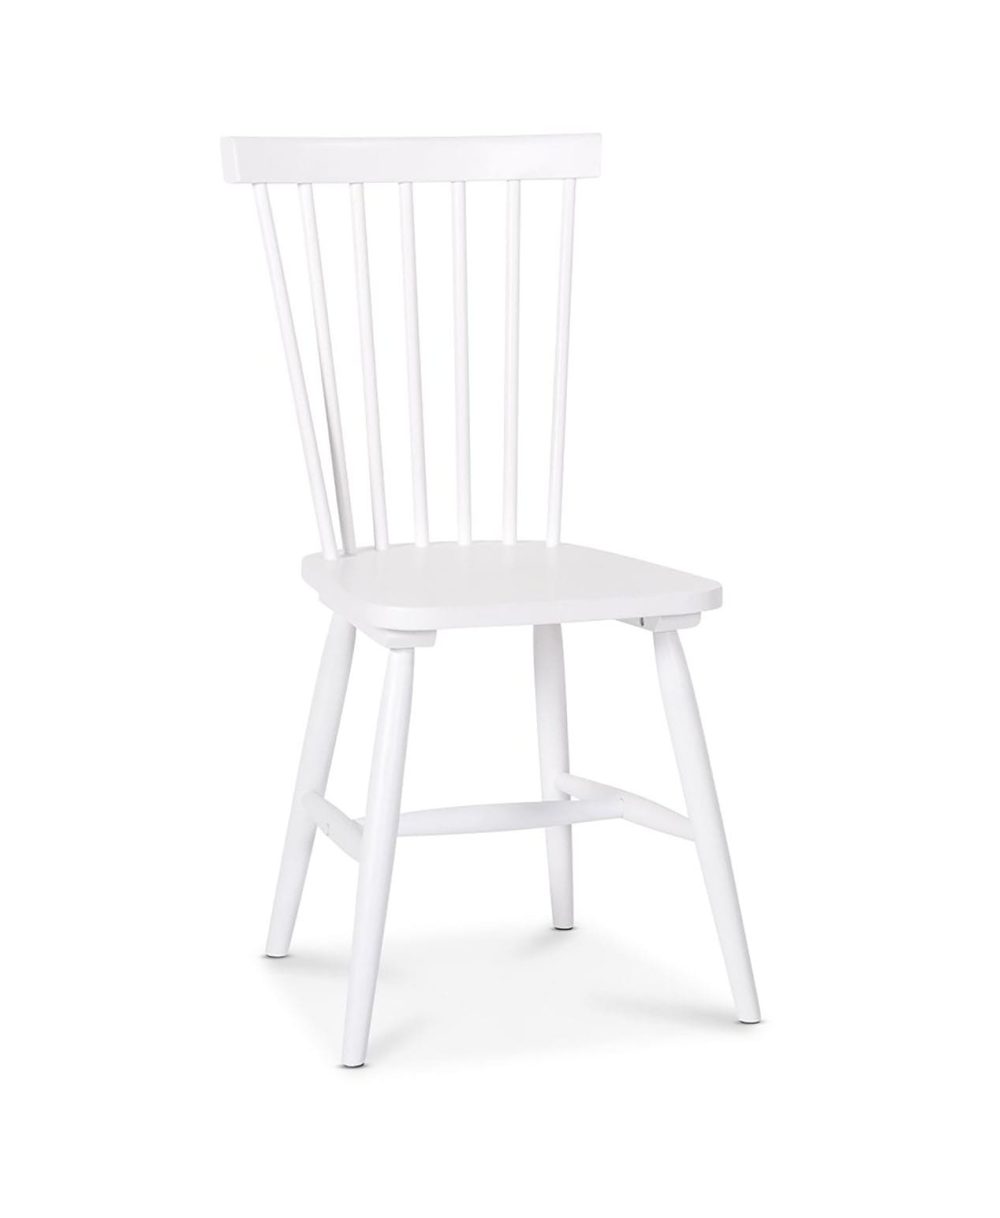 karl-chair-white-profile.jpg